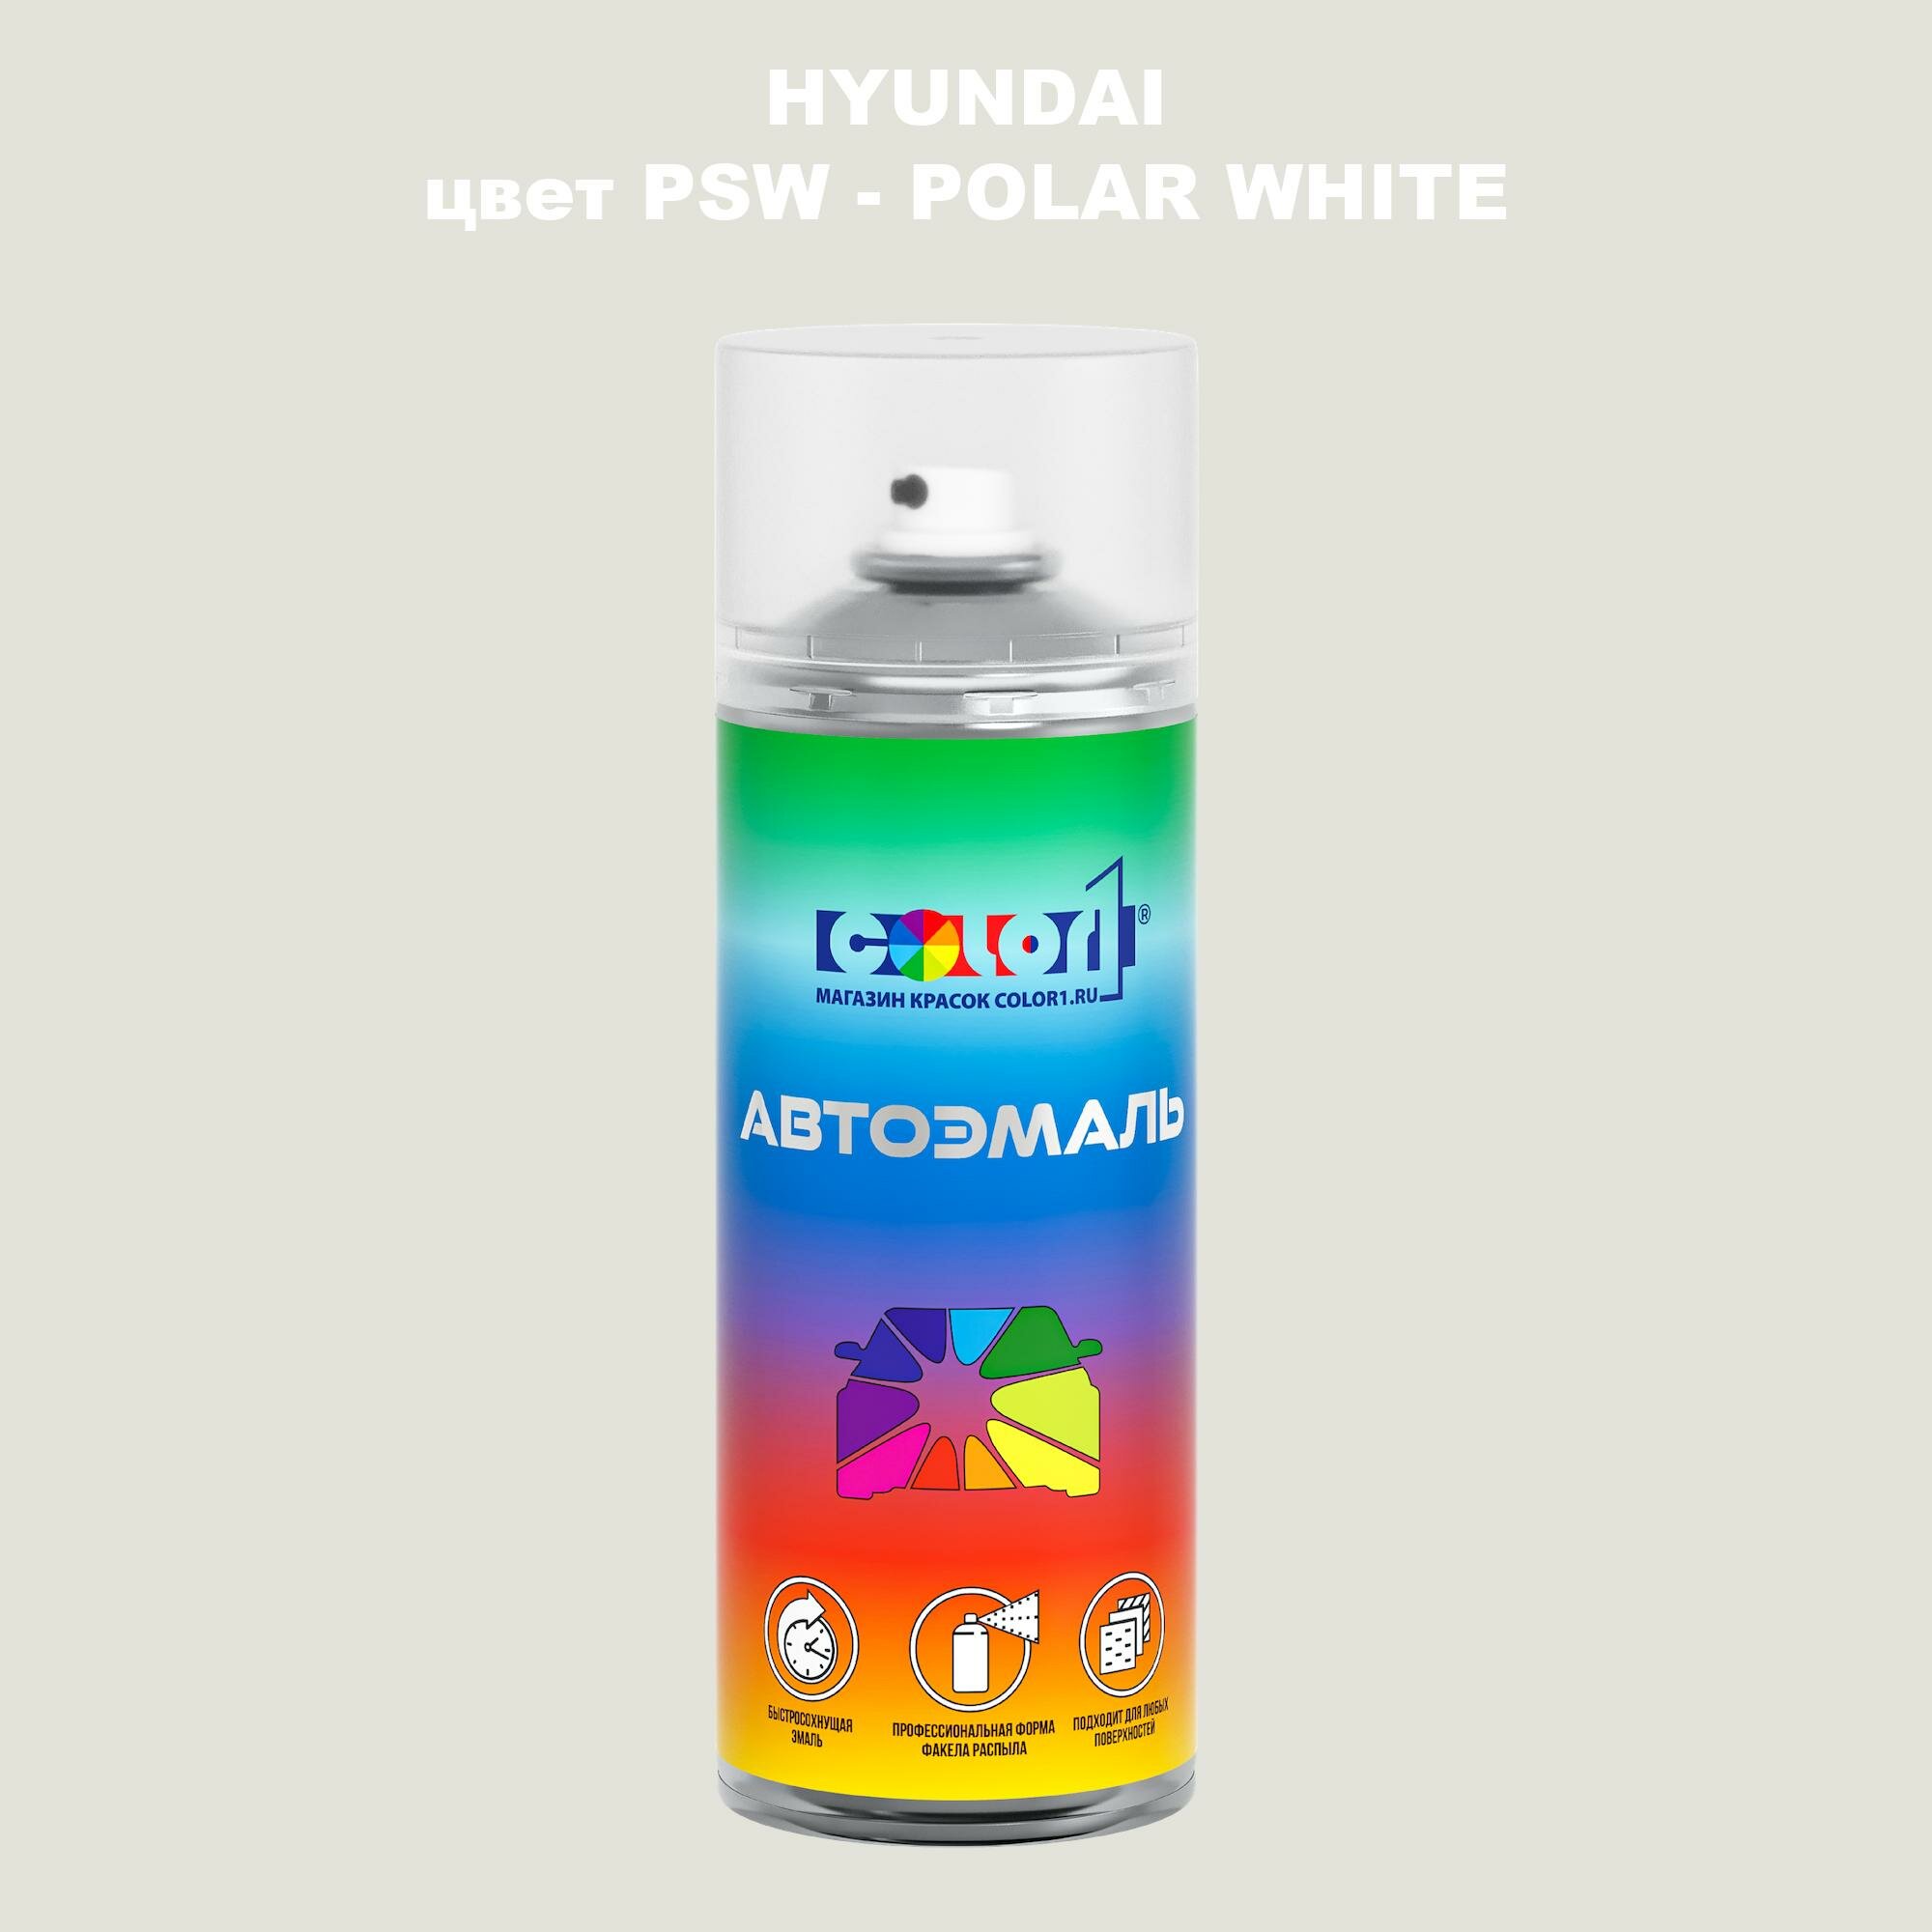 Аэрозольная краска COLOR1 для HYUNDAI, цвет PSW - POLAR WHITE